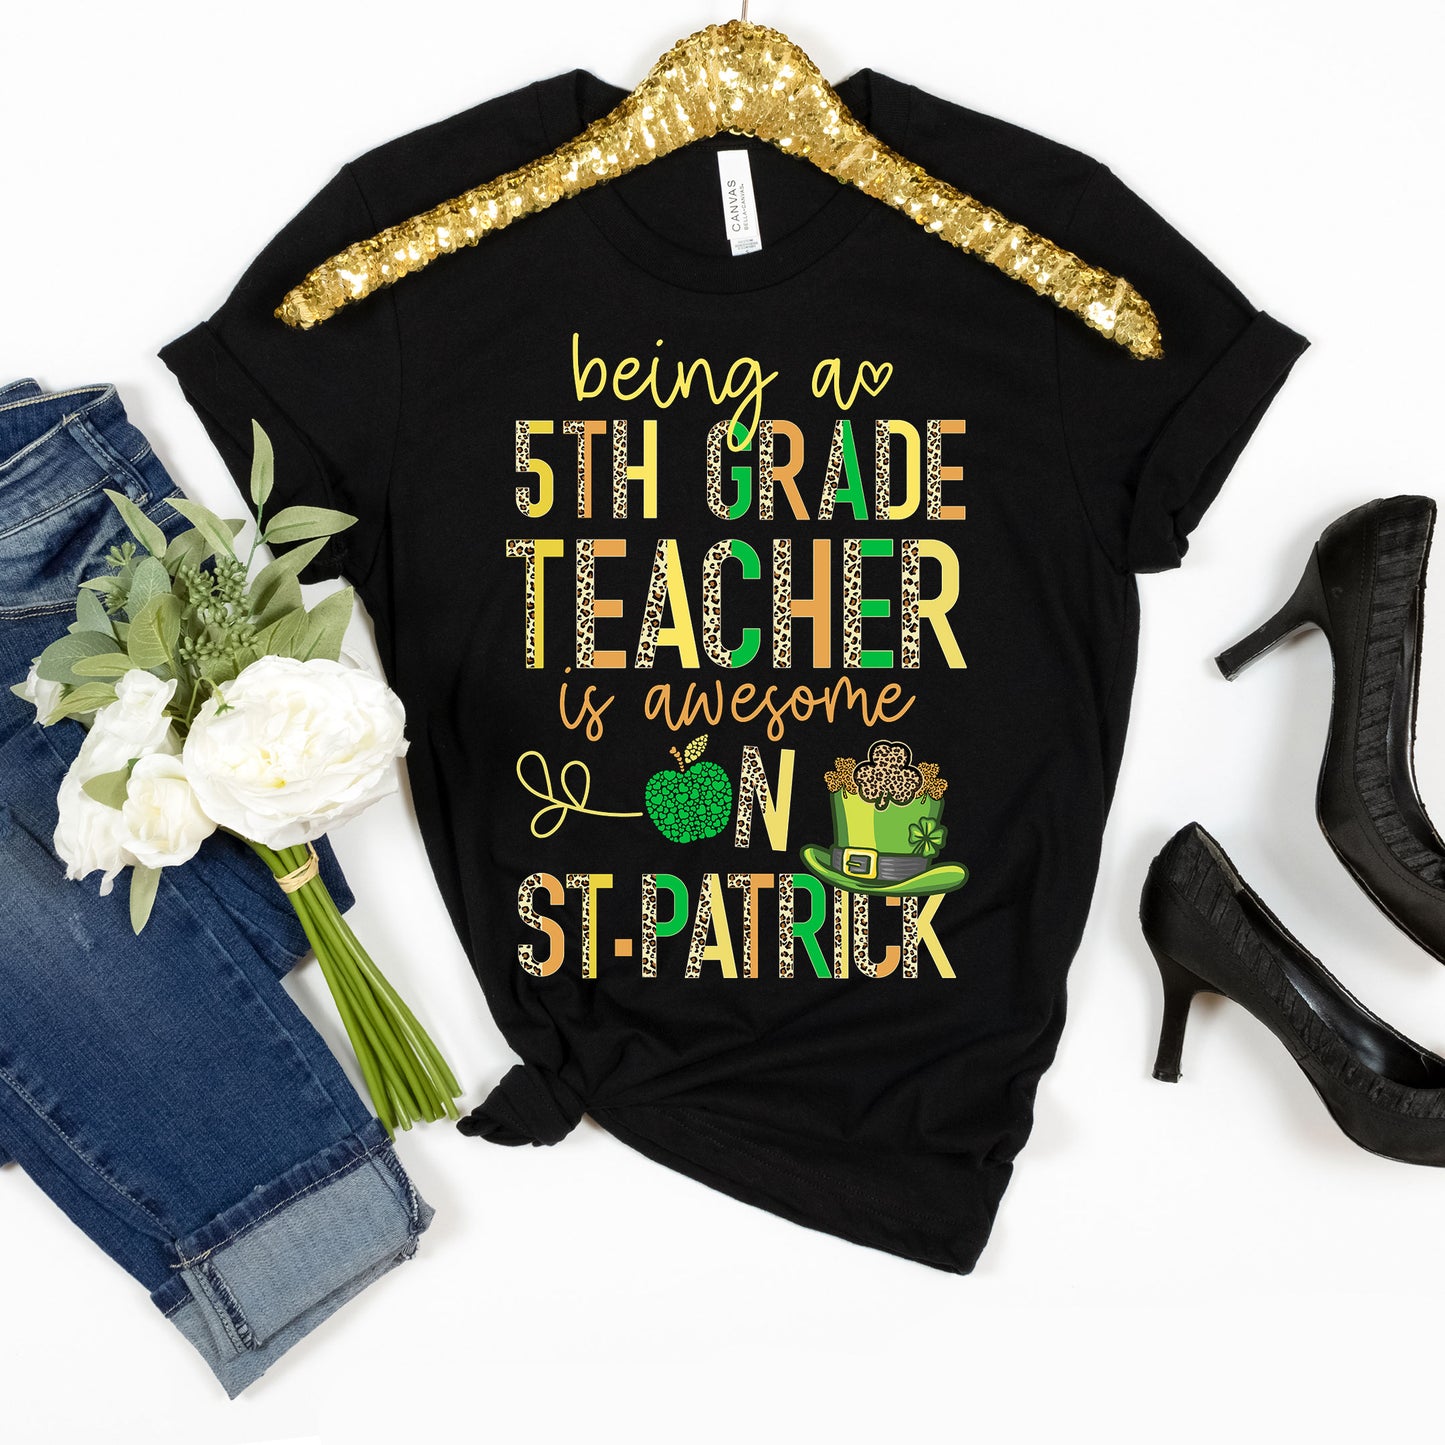 Teaching 5TH Grade Teacher St Patrick's Day T-Shirt - Lucky To Be A Fifth Grade School Teacher Team